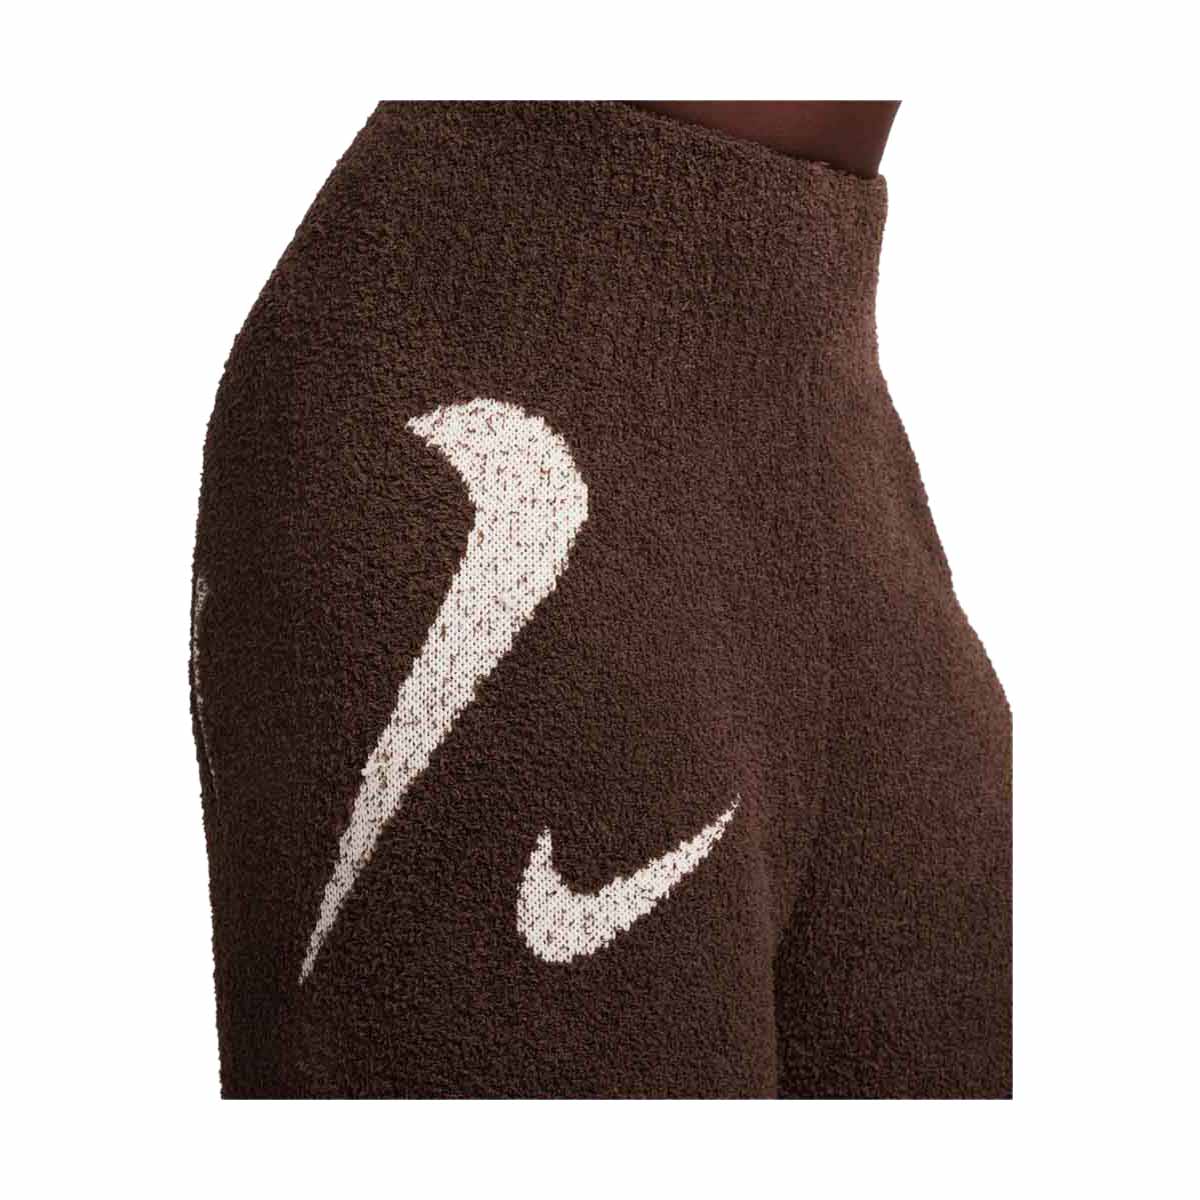 Women's Nike Sportswear Phoenix Wide-Leg Cozy Knit Pants